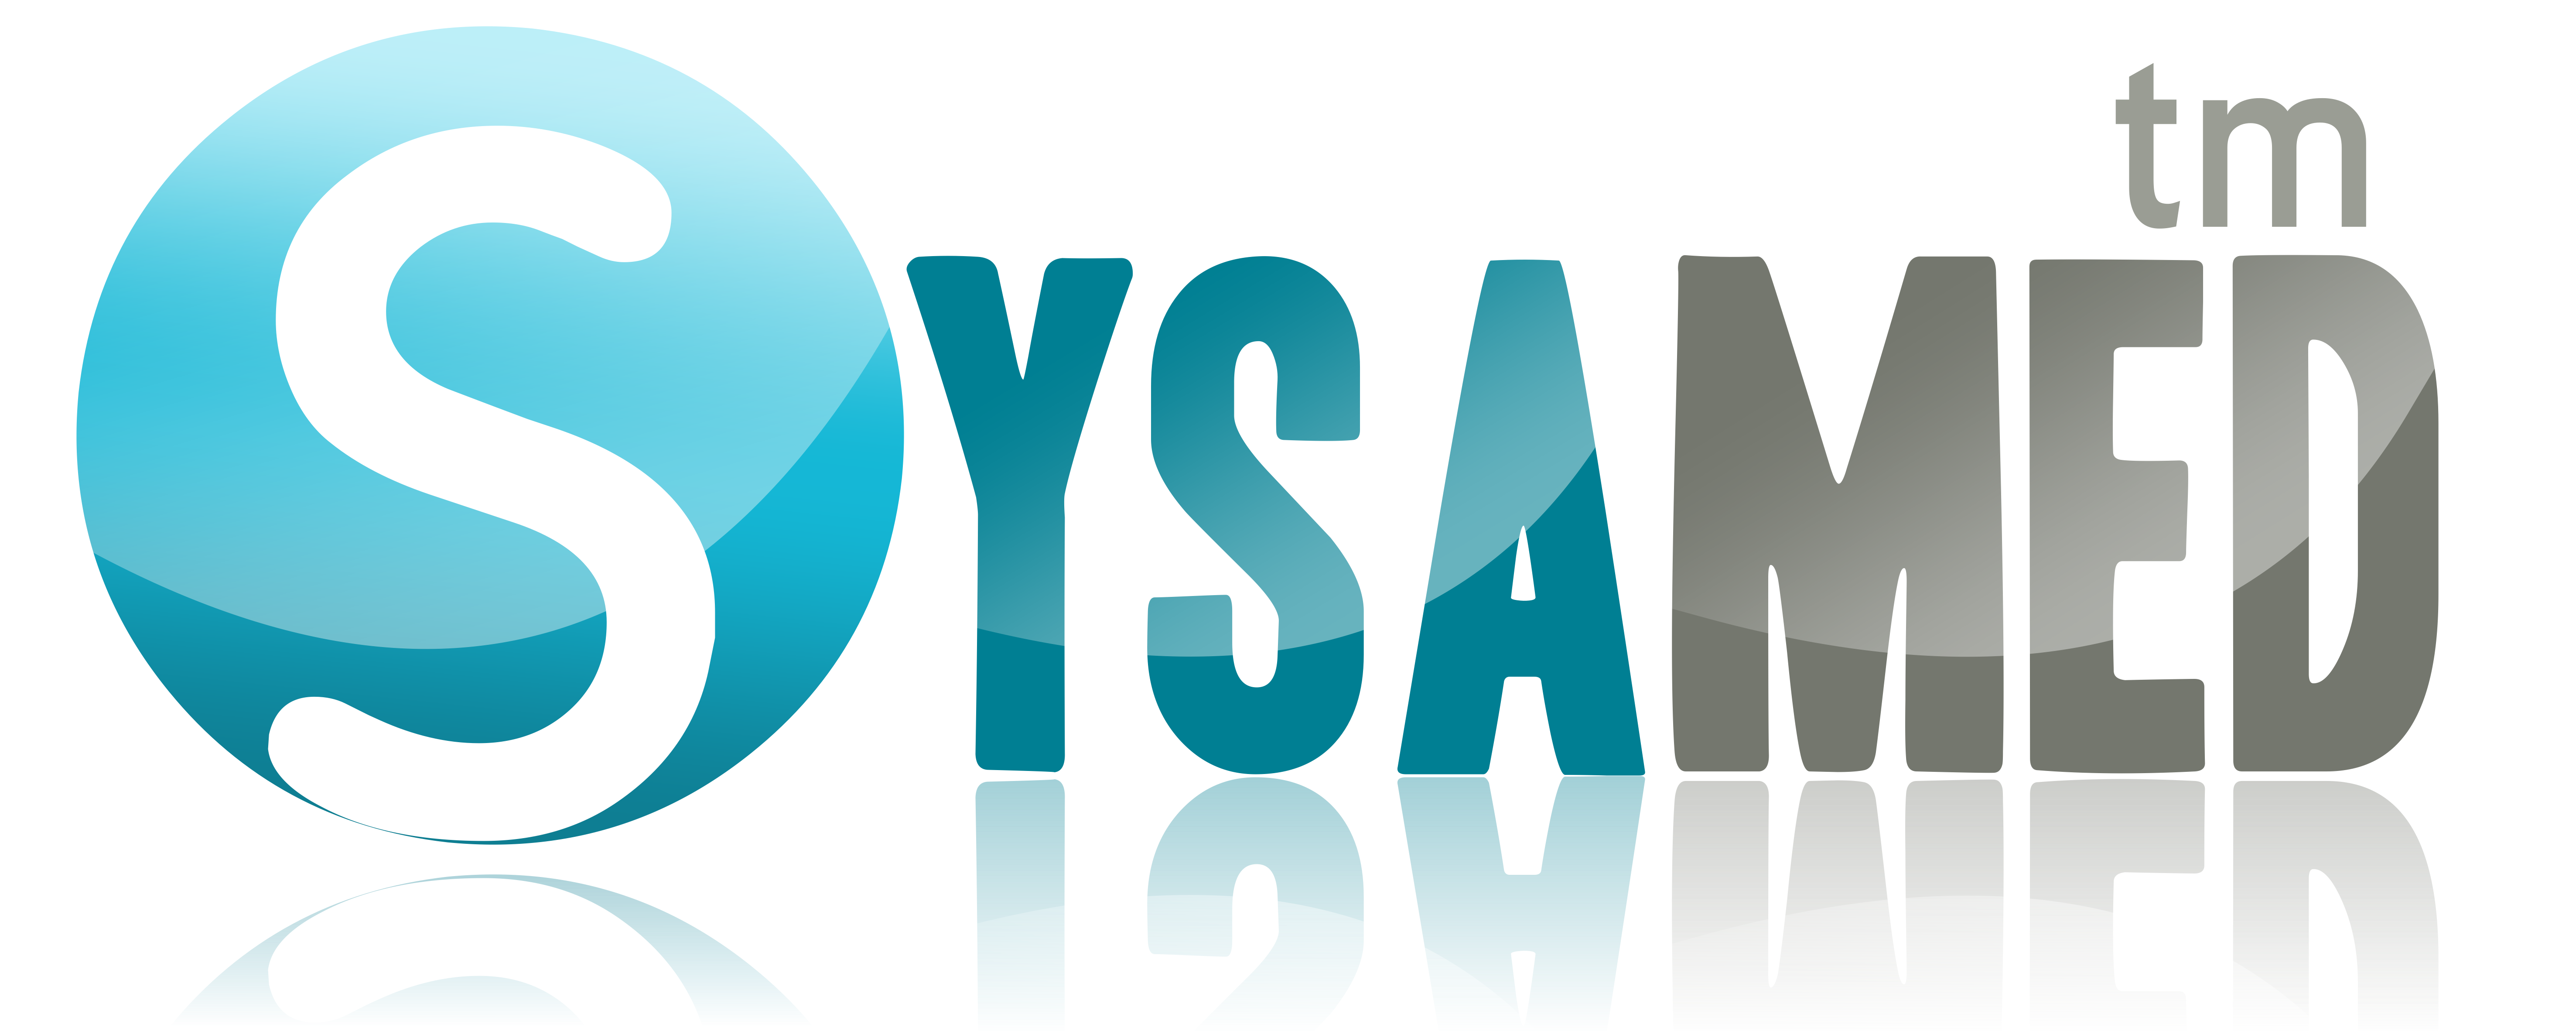 Logo SYSAMED